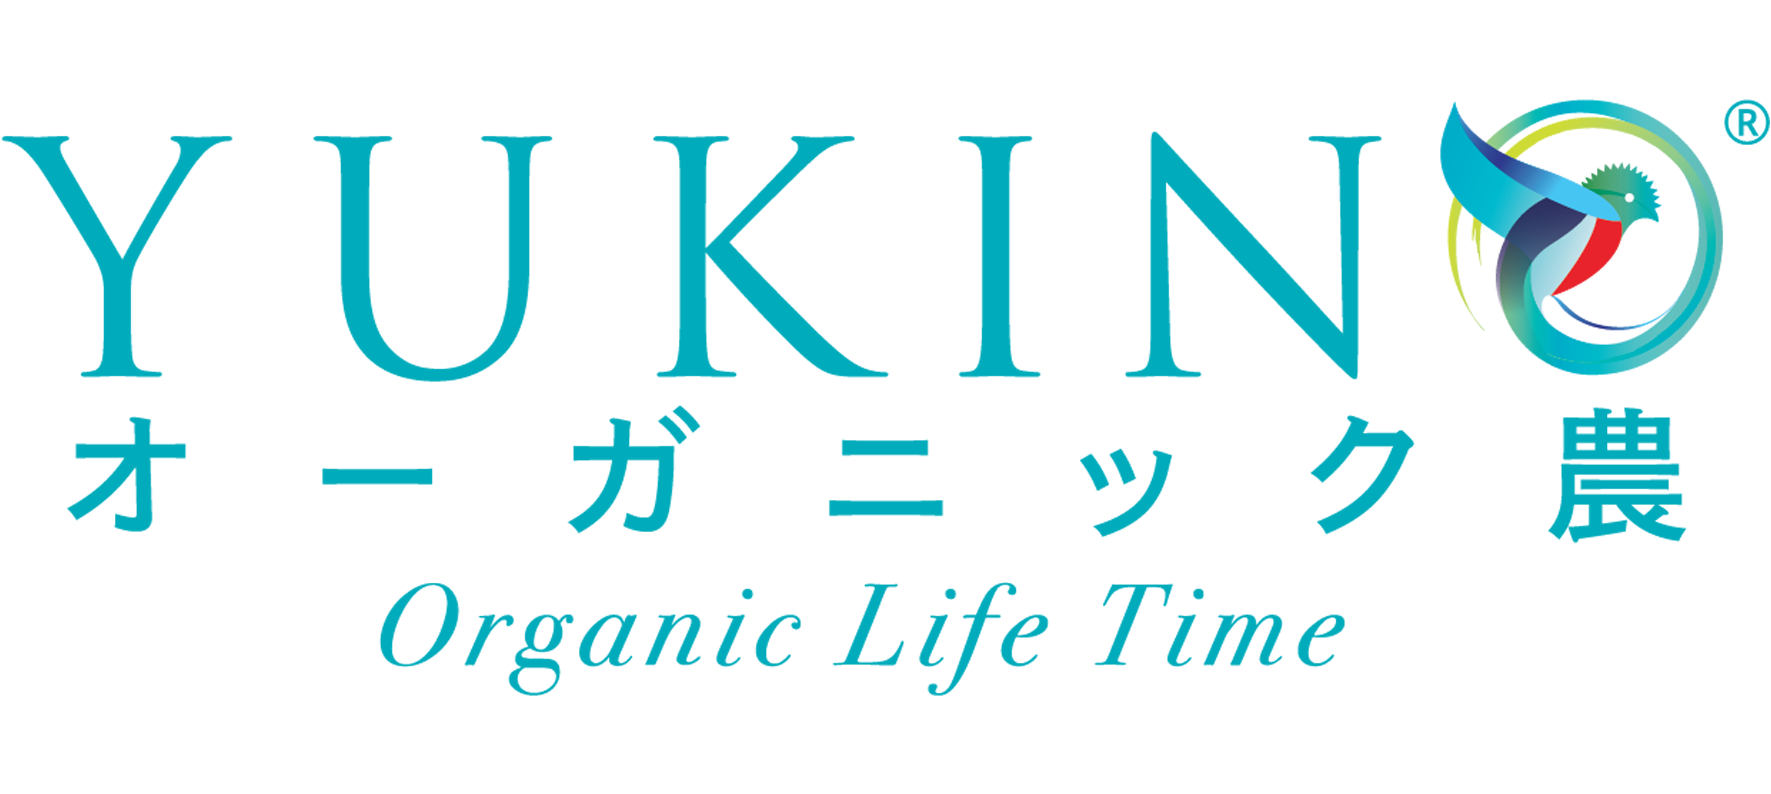 YUKINO Foods